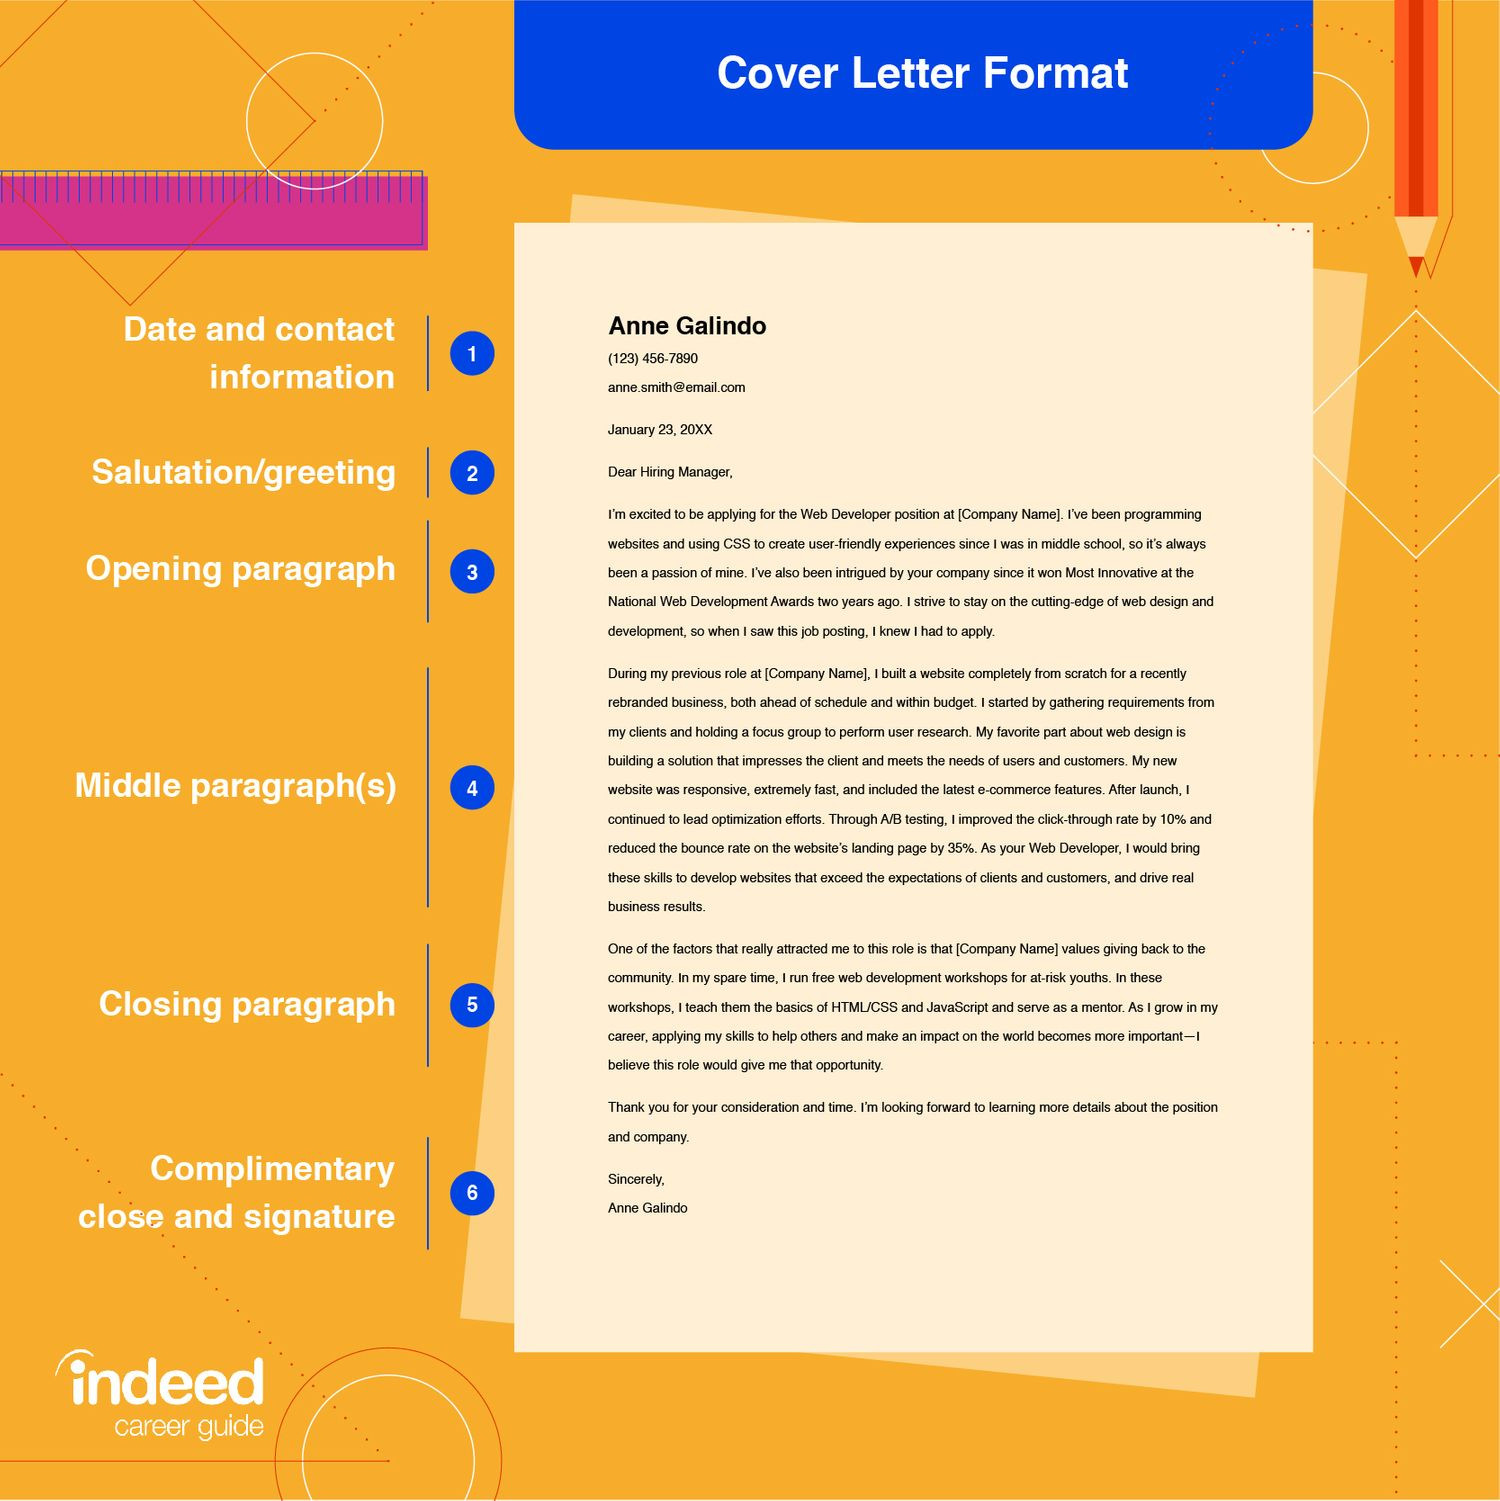 Email Cover Letter for Sending Resume Samples How to Send An Email Cover Letter (with Example) Indeed.com